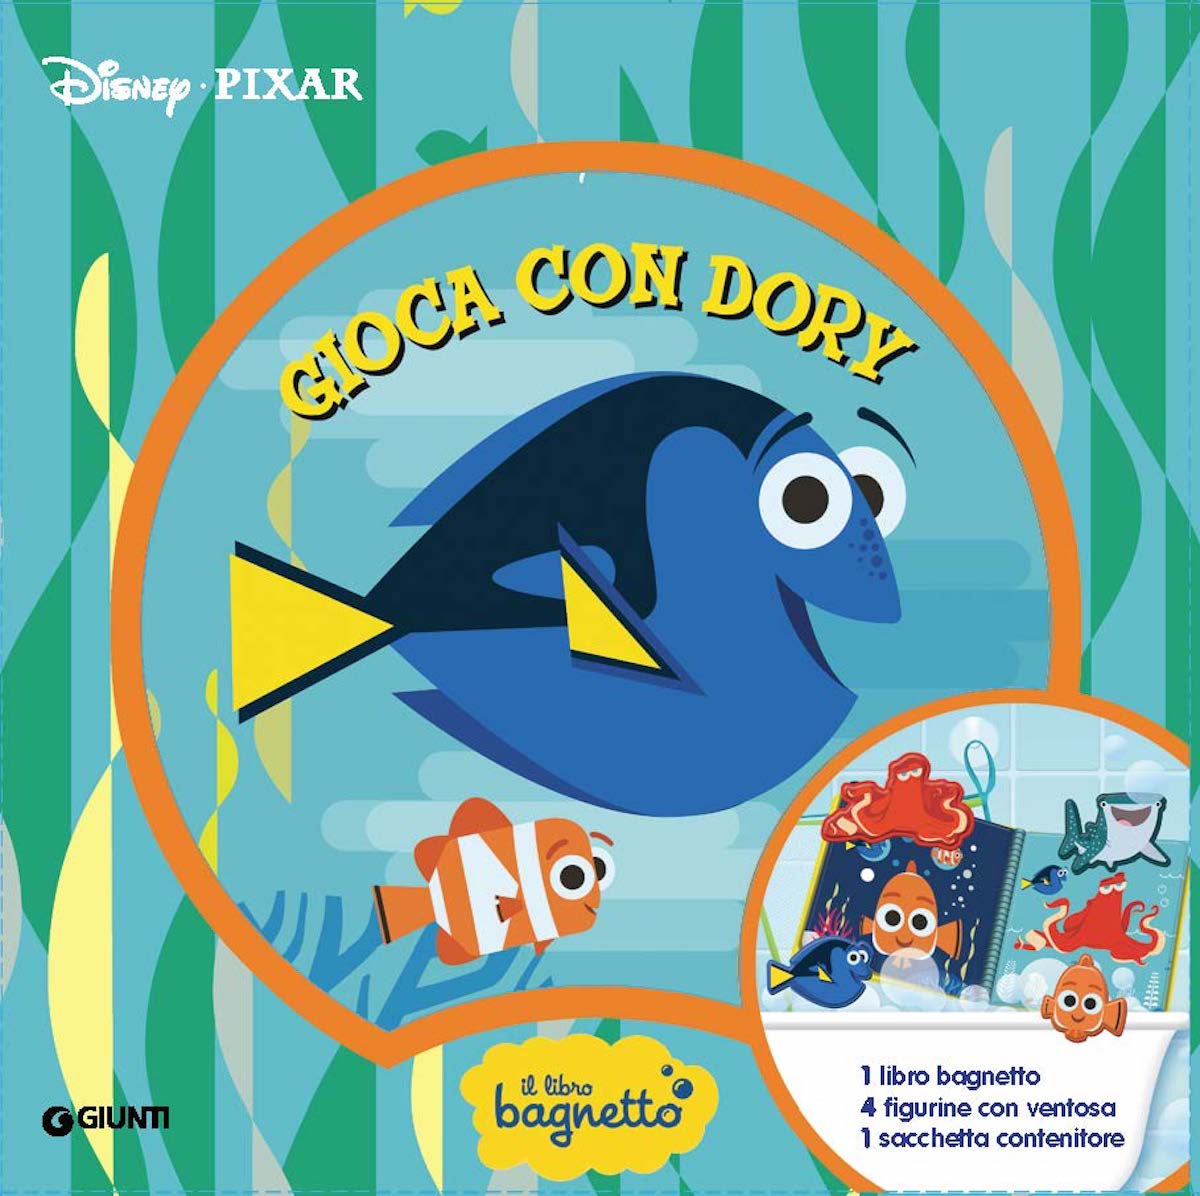 Libro bagnetto Gioca con Dory - Disney/Pixar::1 libro bagnetto, 4 figurine con ventosa, 1 sacchetta contenitore